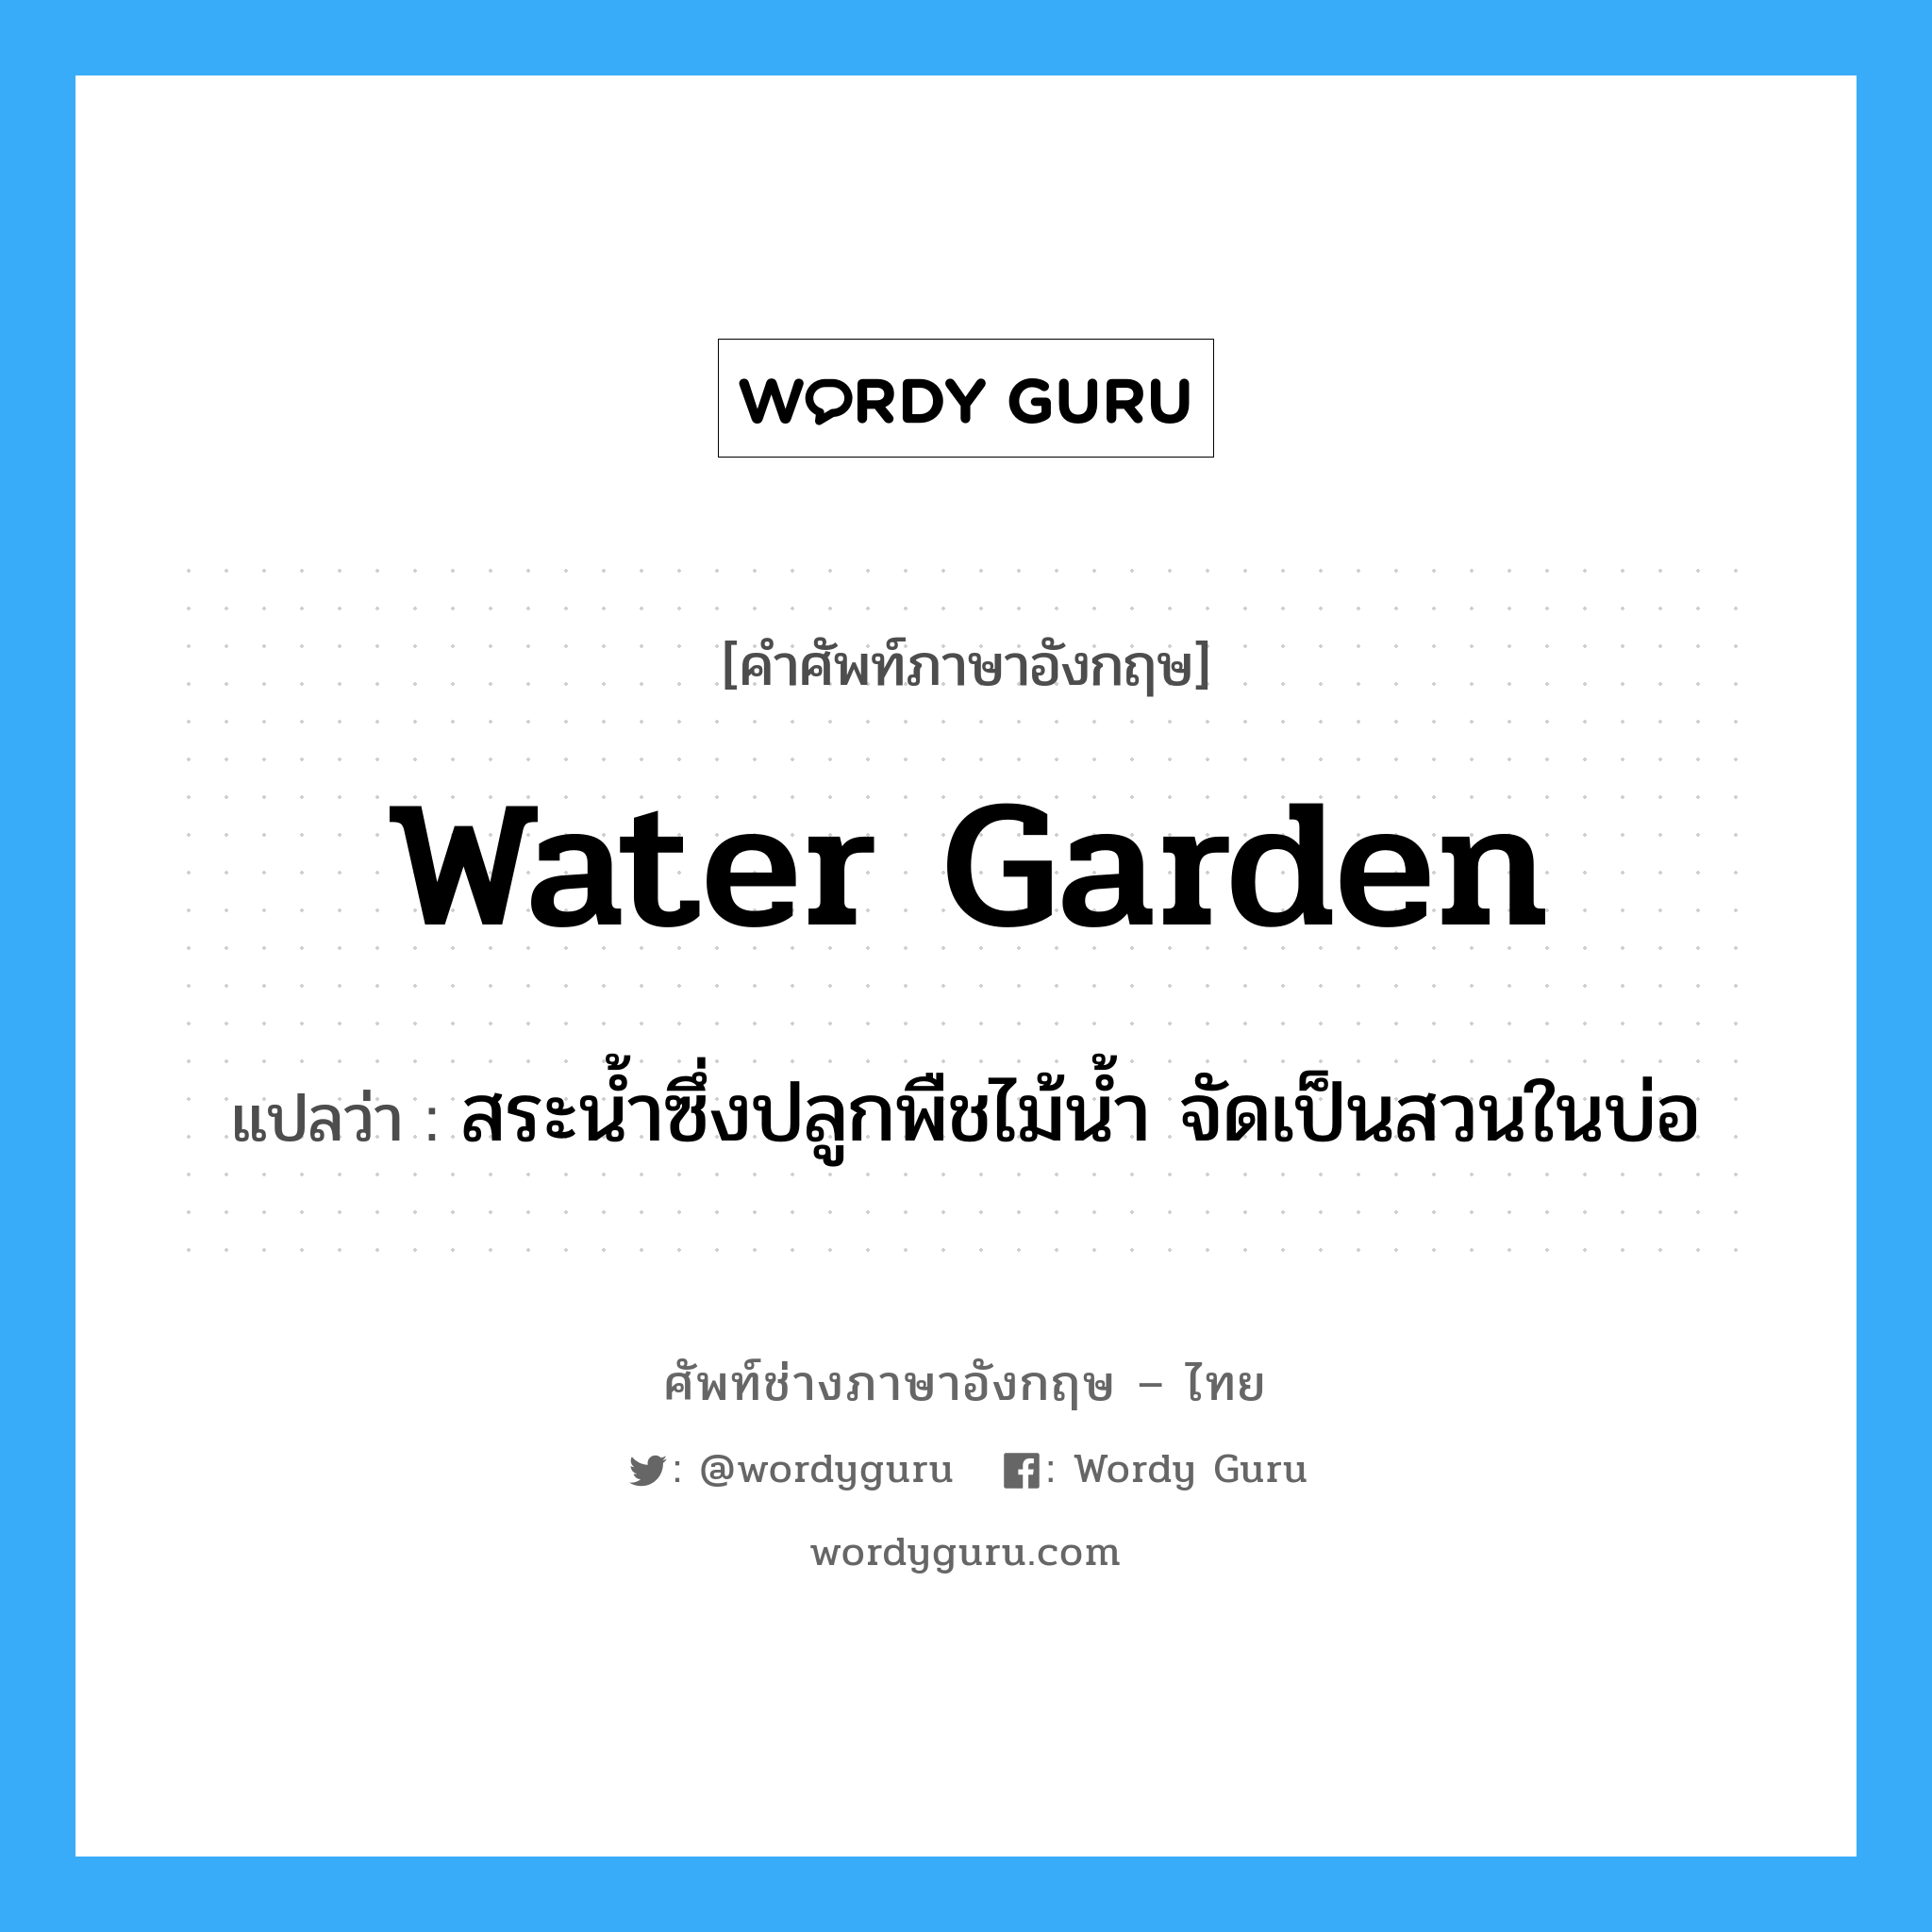 สระน้ำซึ่งปลูกพืชไม้น้ำ จัดเป็นสวนในบ่อ ภาษาอังกฤษ?, คำศัพท์ช่างภาษาอังกฤษ - ไทย สระน้ำซึ่งปลูกพืชไม้น้ำ จัดเป็นสวนในบ่อ คำศัพท์ภาษาอังกฤษ สระน้ำซึ่งปลูกพืชไม้น้ำ จัดเป็นสวนในบ่อ แปลว่า water garden